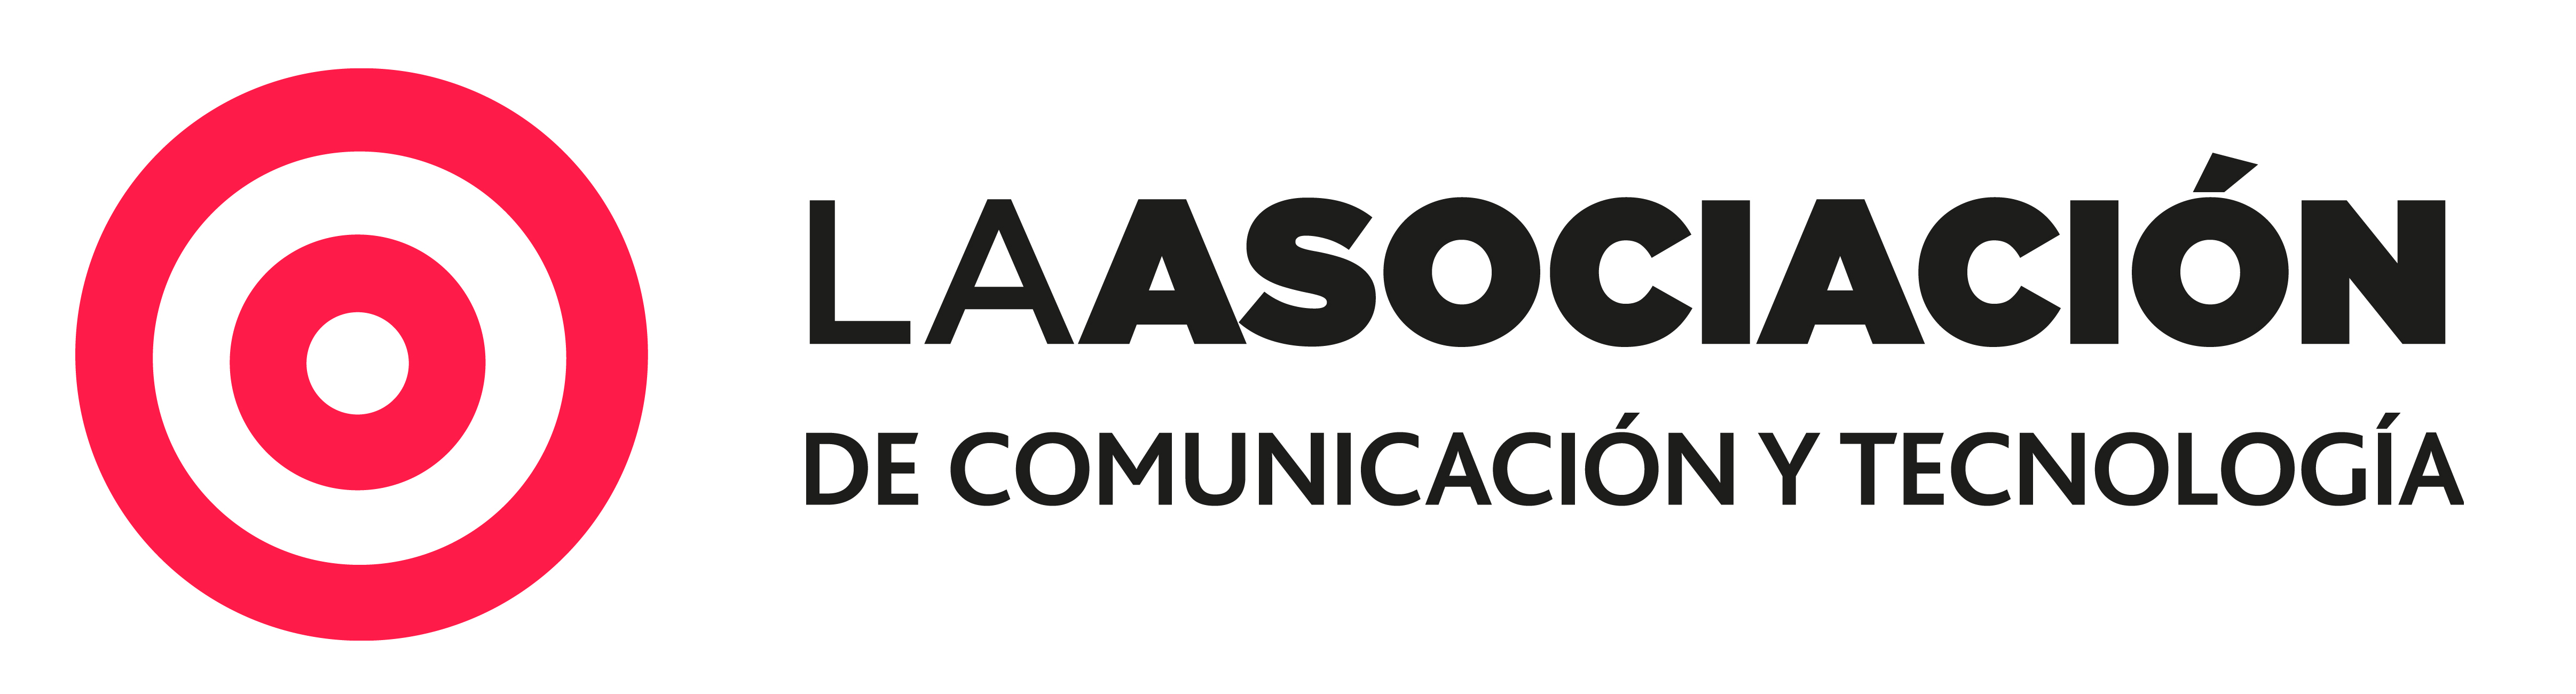 La Asociación de Comunicación y Tecnología